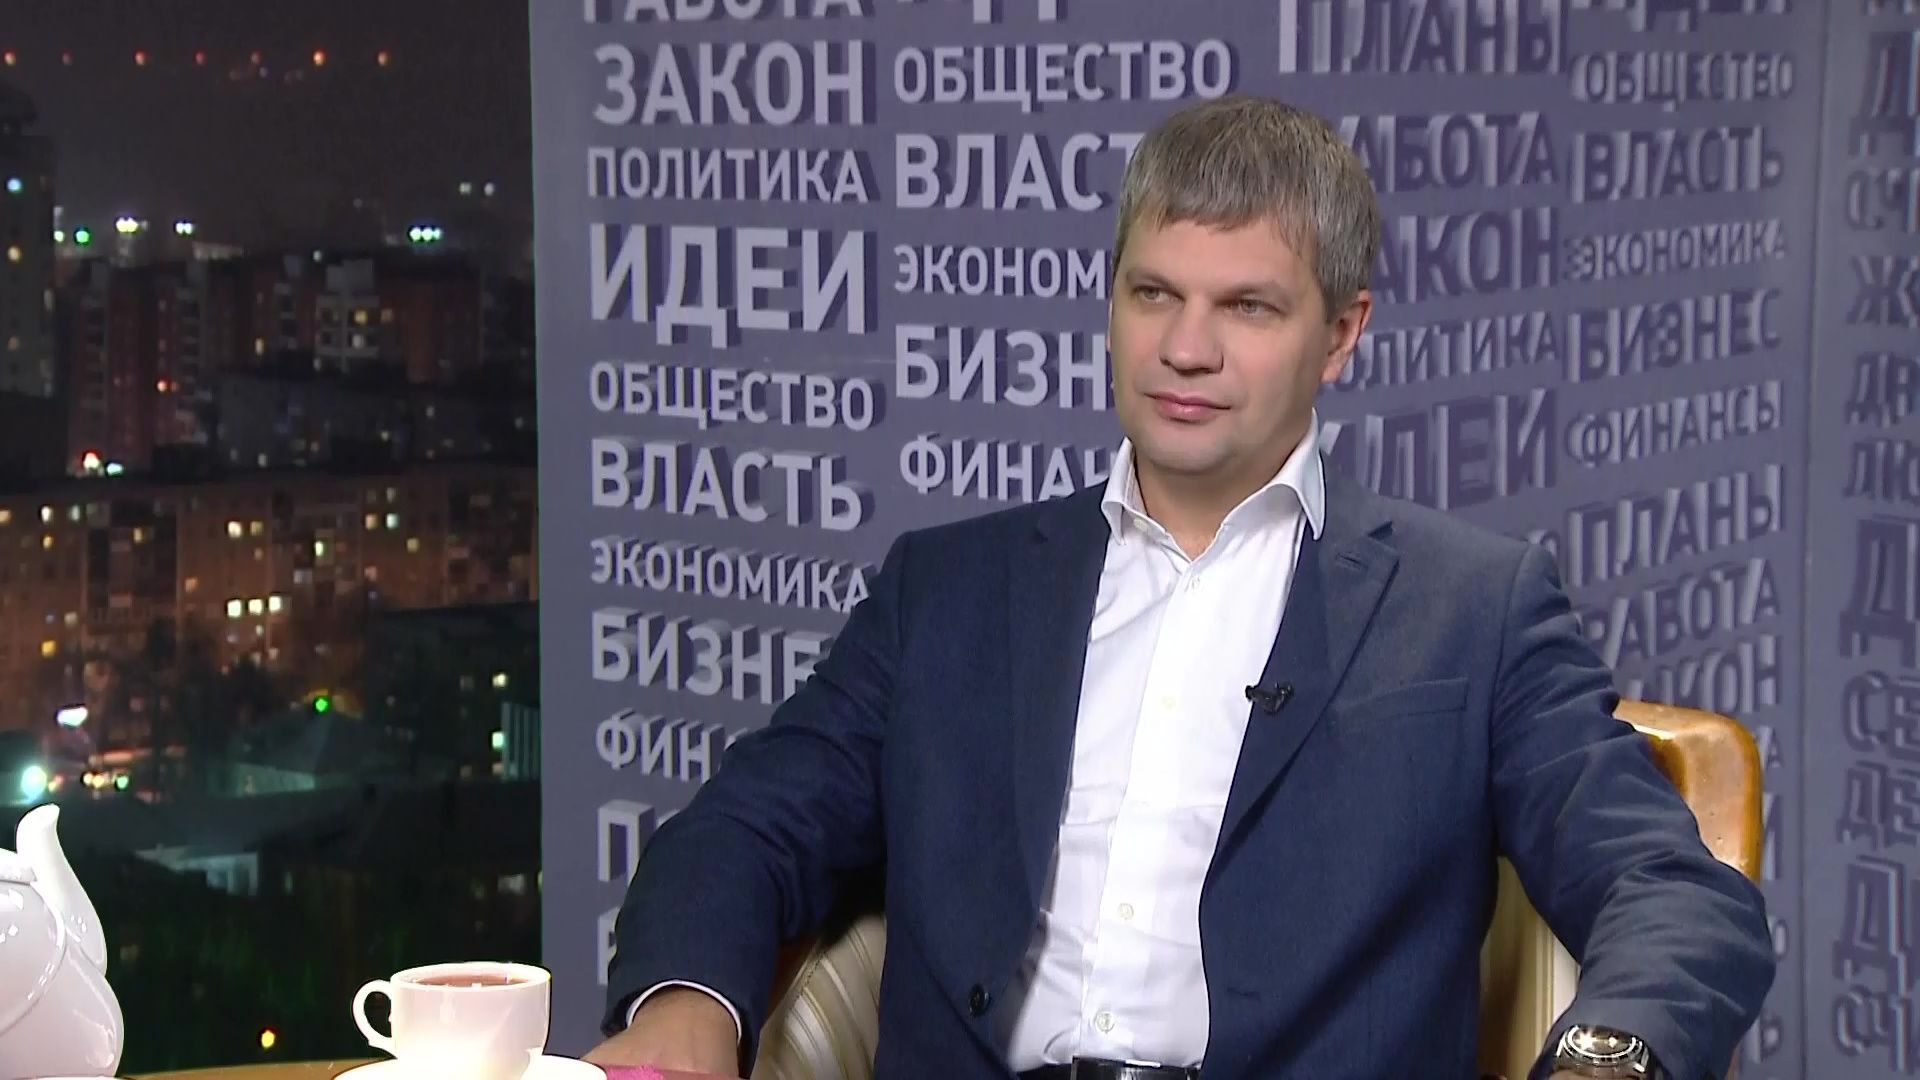 Дмитрий Пылев, депутат Законодательного Собрания Пермского края